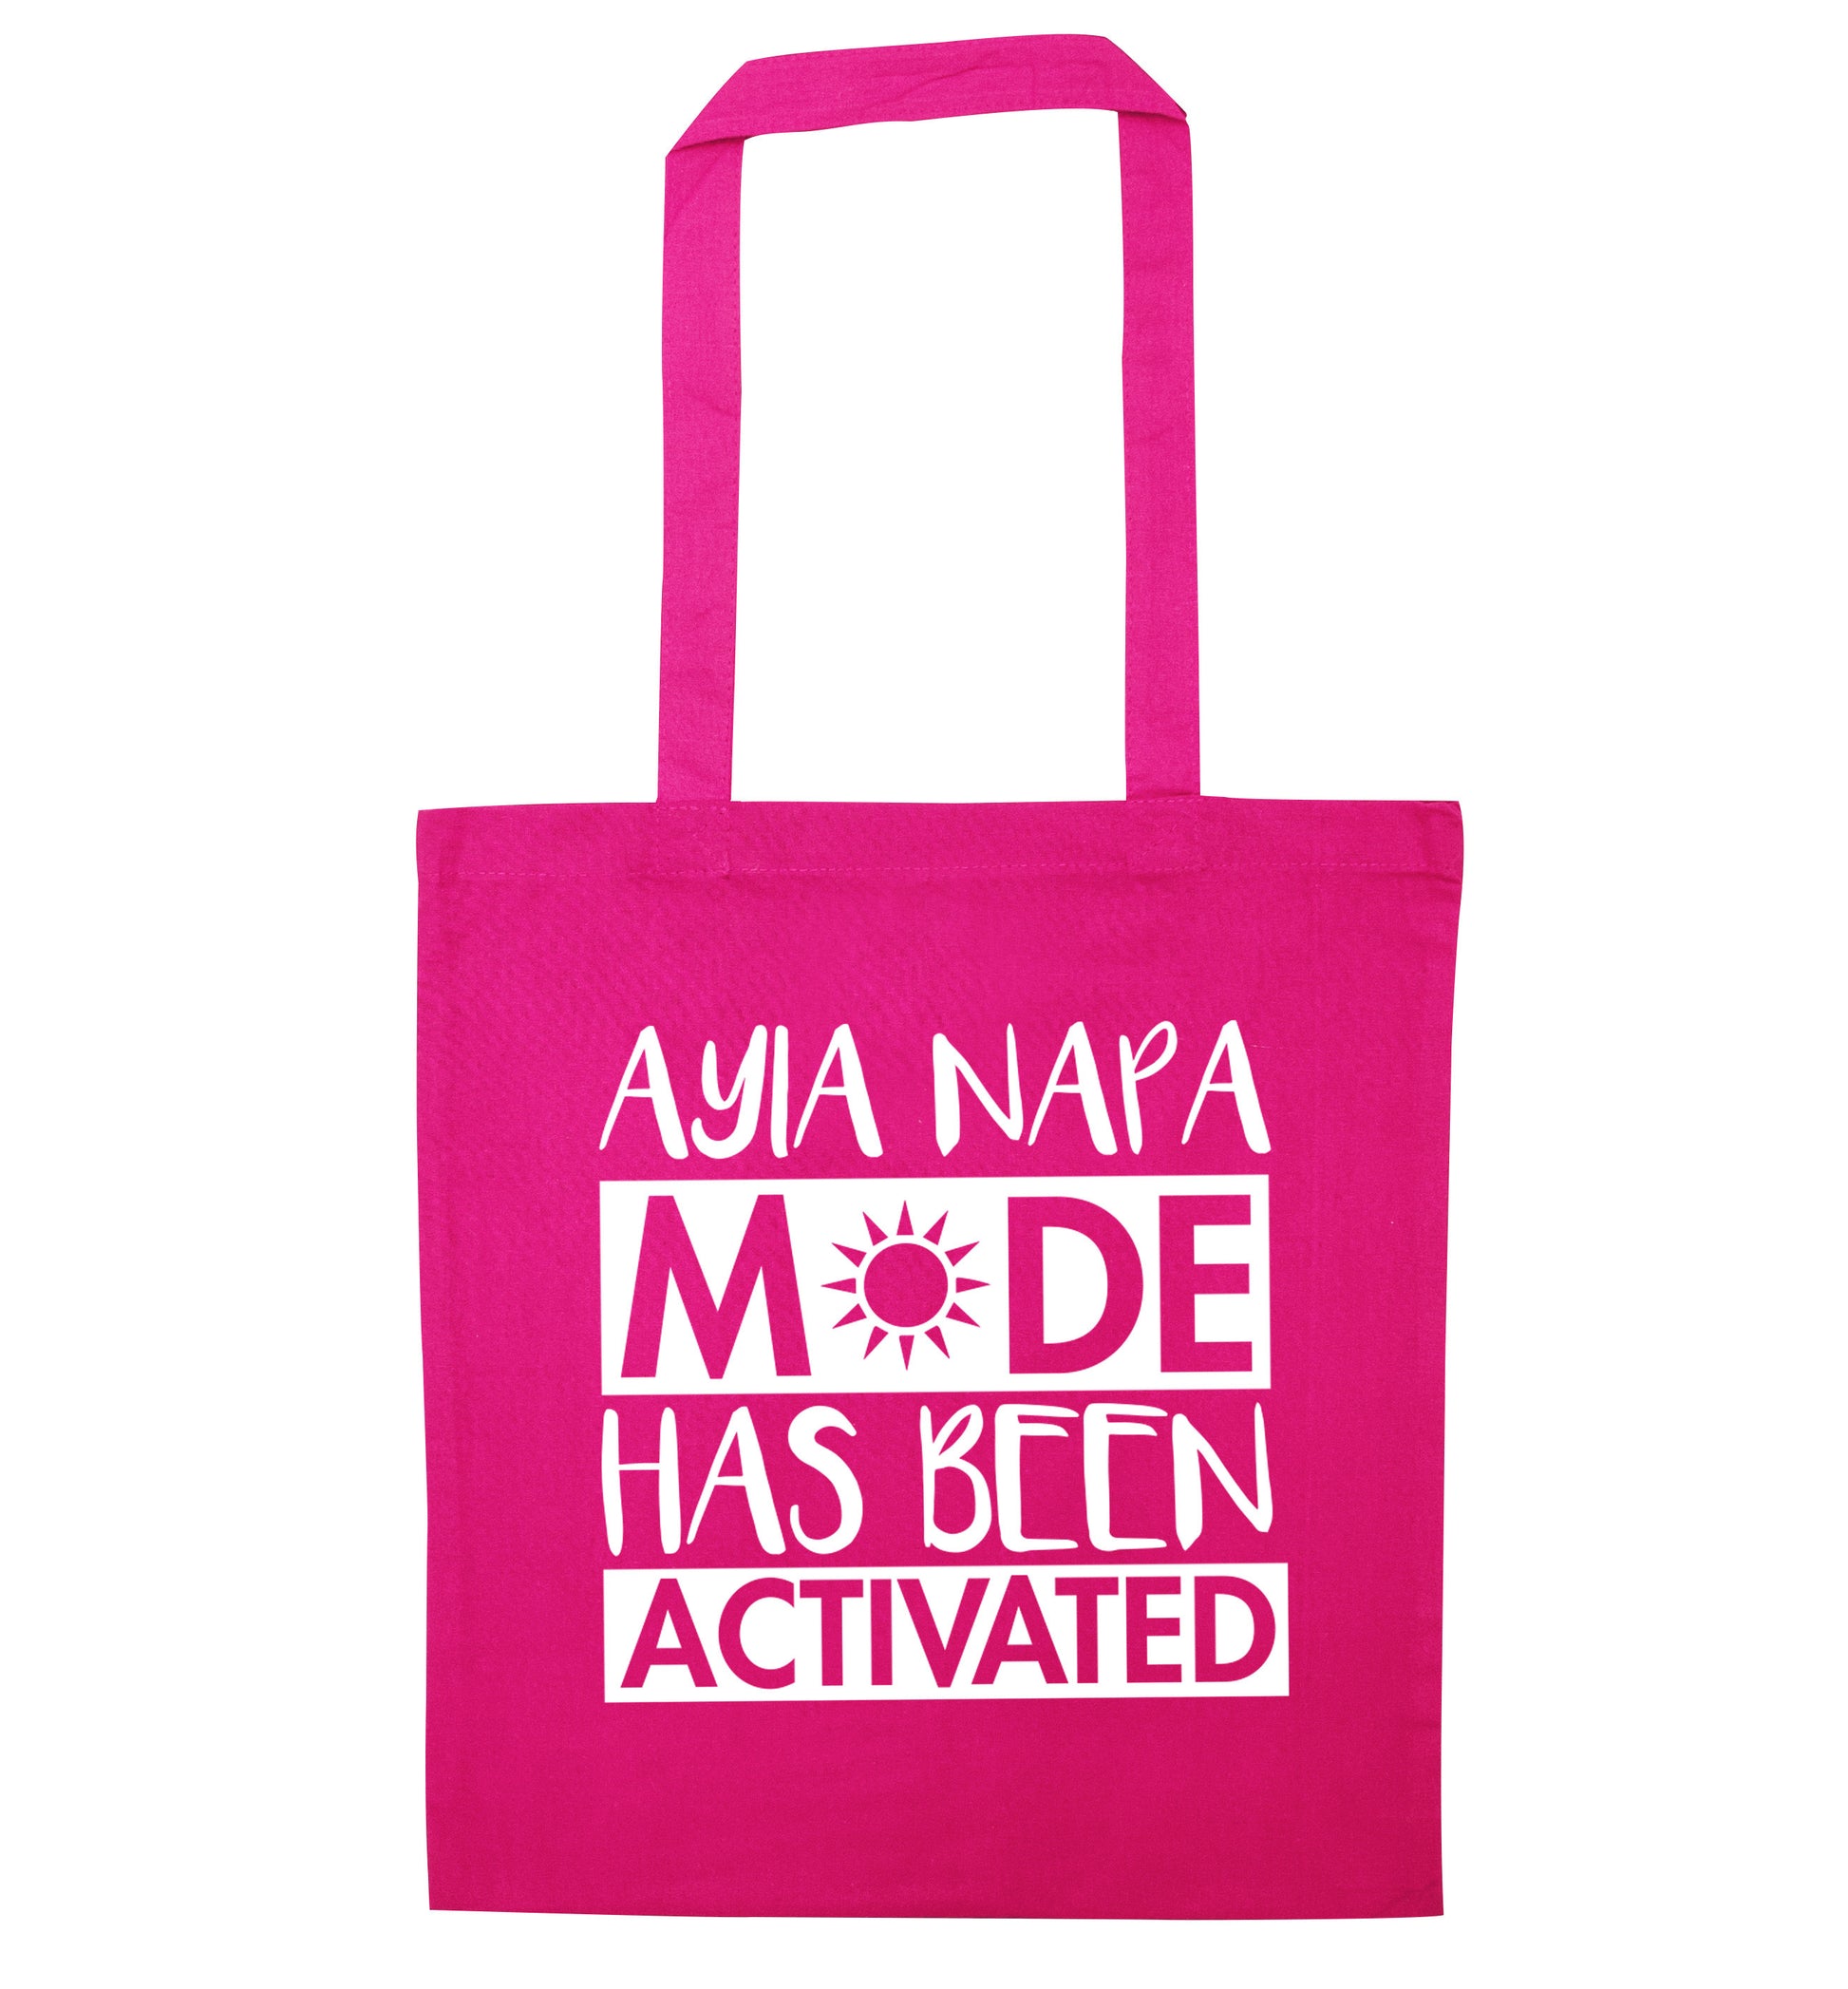 Aiya Napa mode has been activated pink tote bag